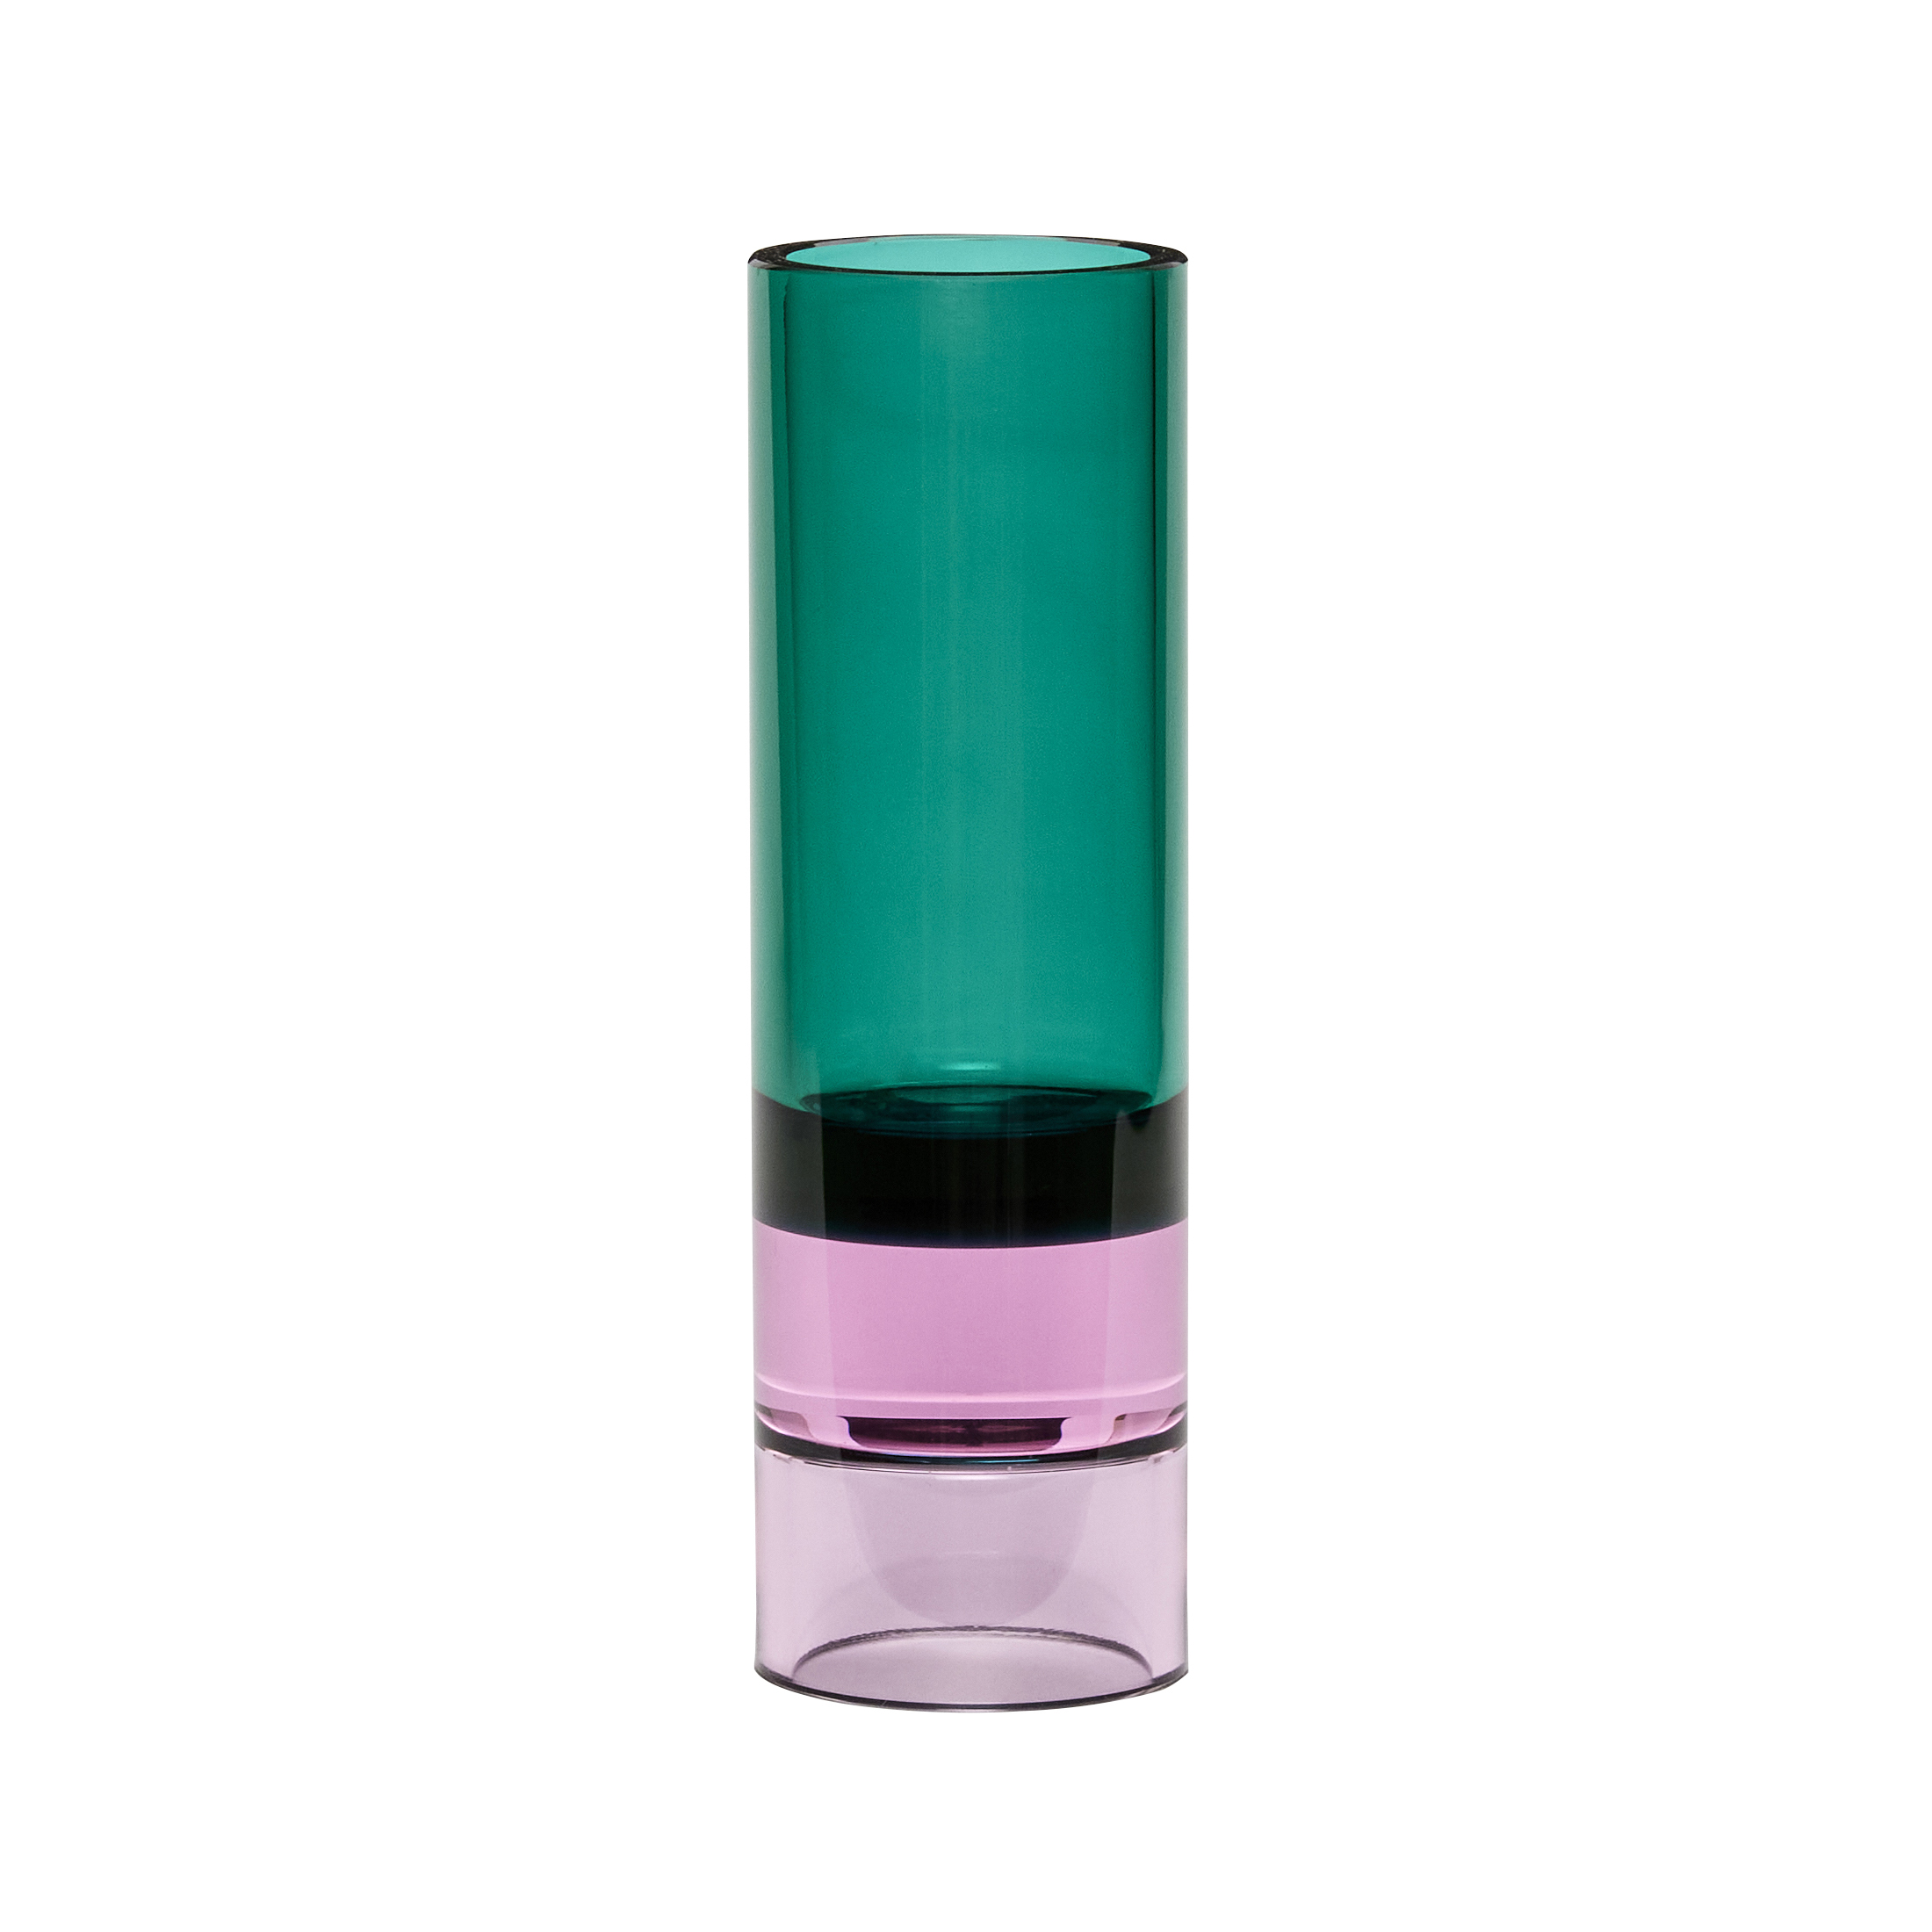 Hubsch Astro Crystal Vase - Green / Pink